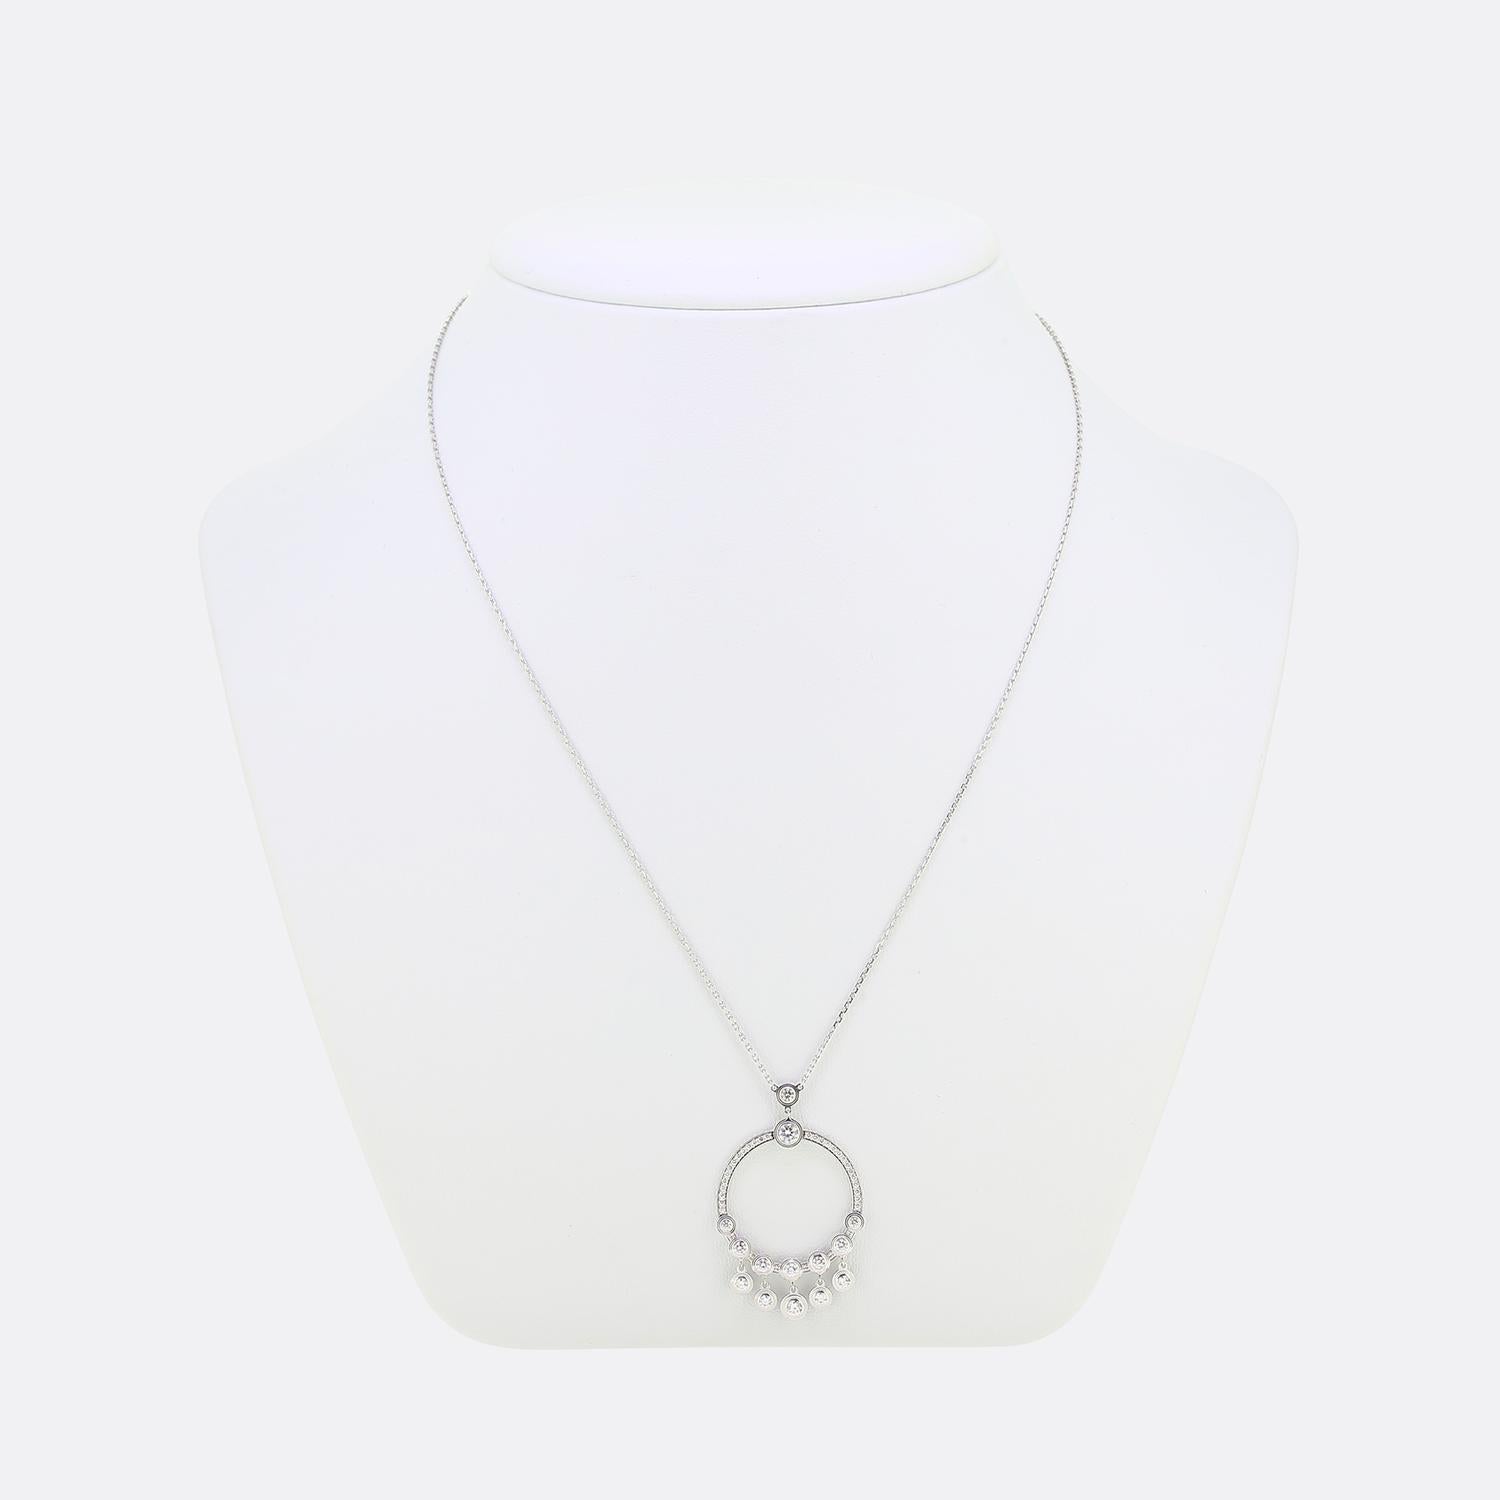 Voici un ravissant collier de la maison de joaillerie de renommée mondiale Cartier. Ce pendentif fait partie de la collection emblématique d'Amour et présente 5 diamants sertis en chaton qui pendent librement à partir d'un cadre circulaire ouvert